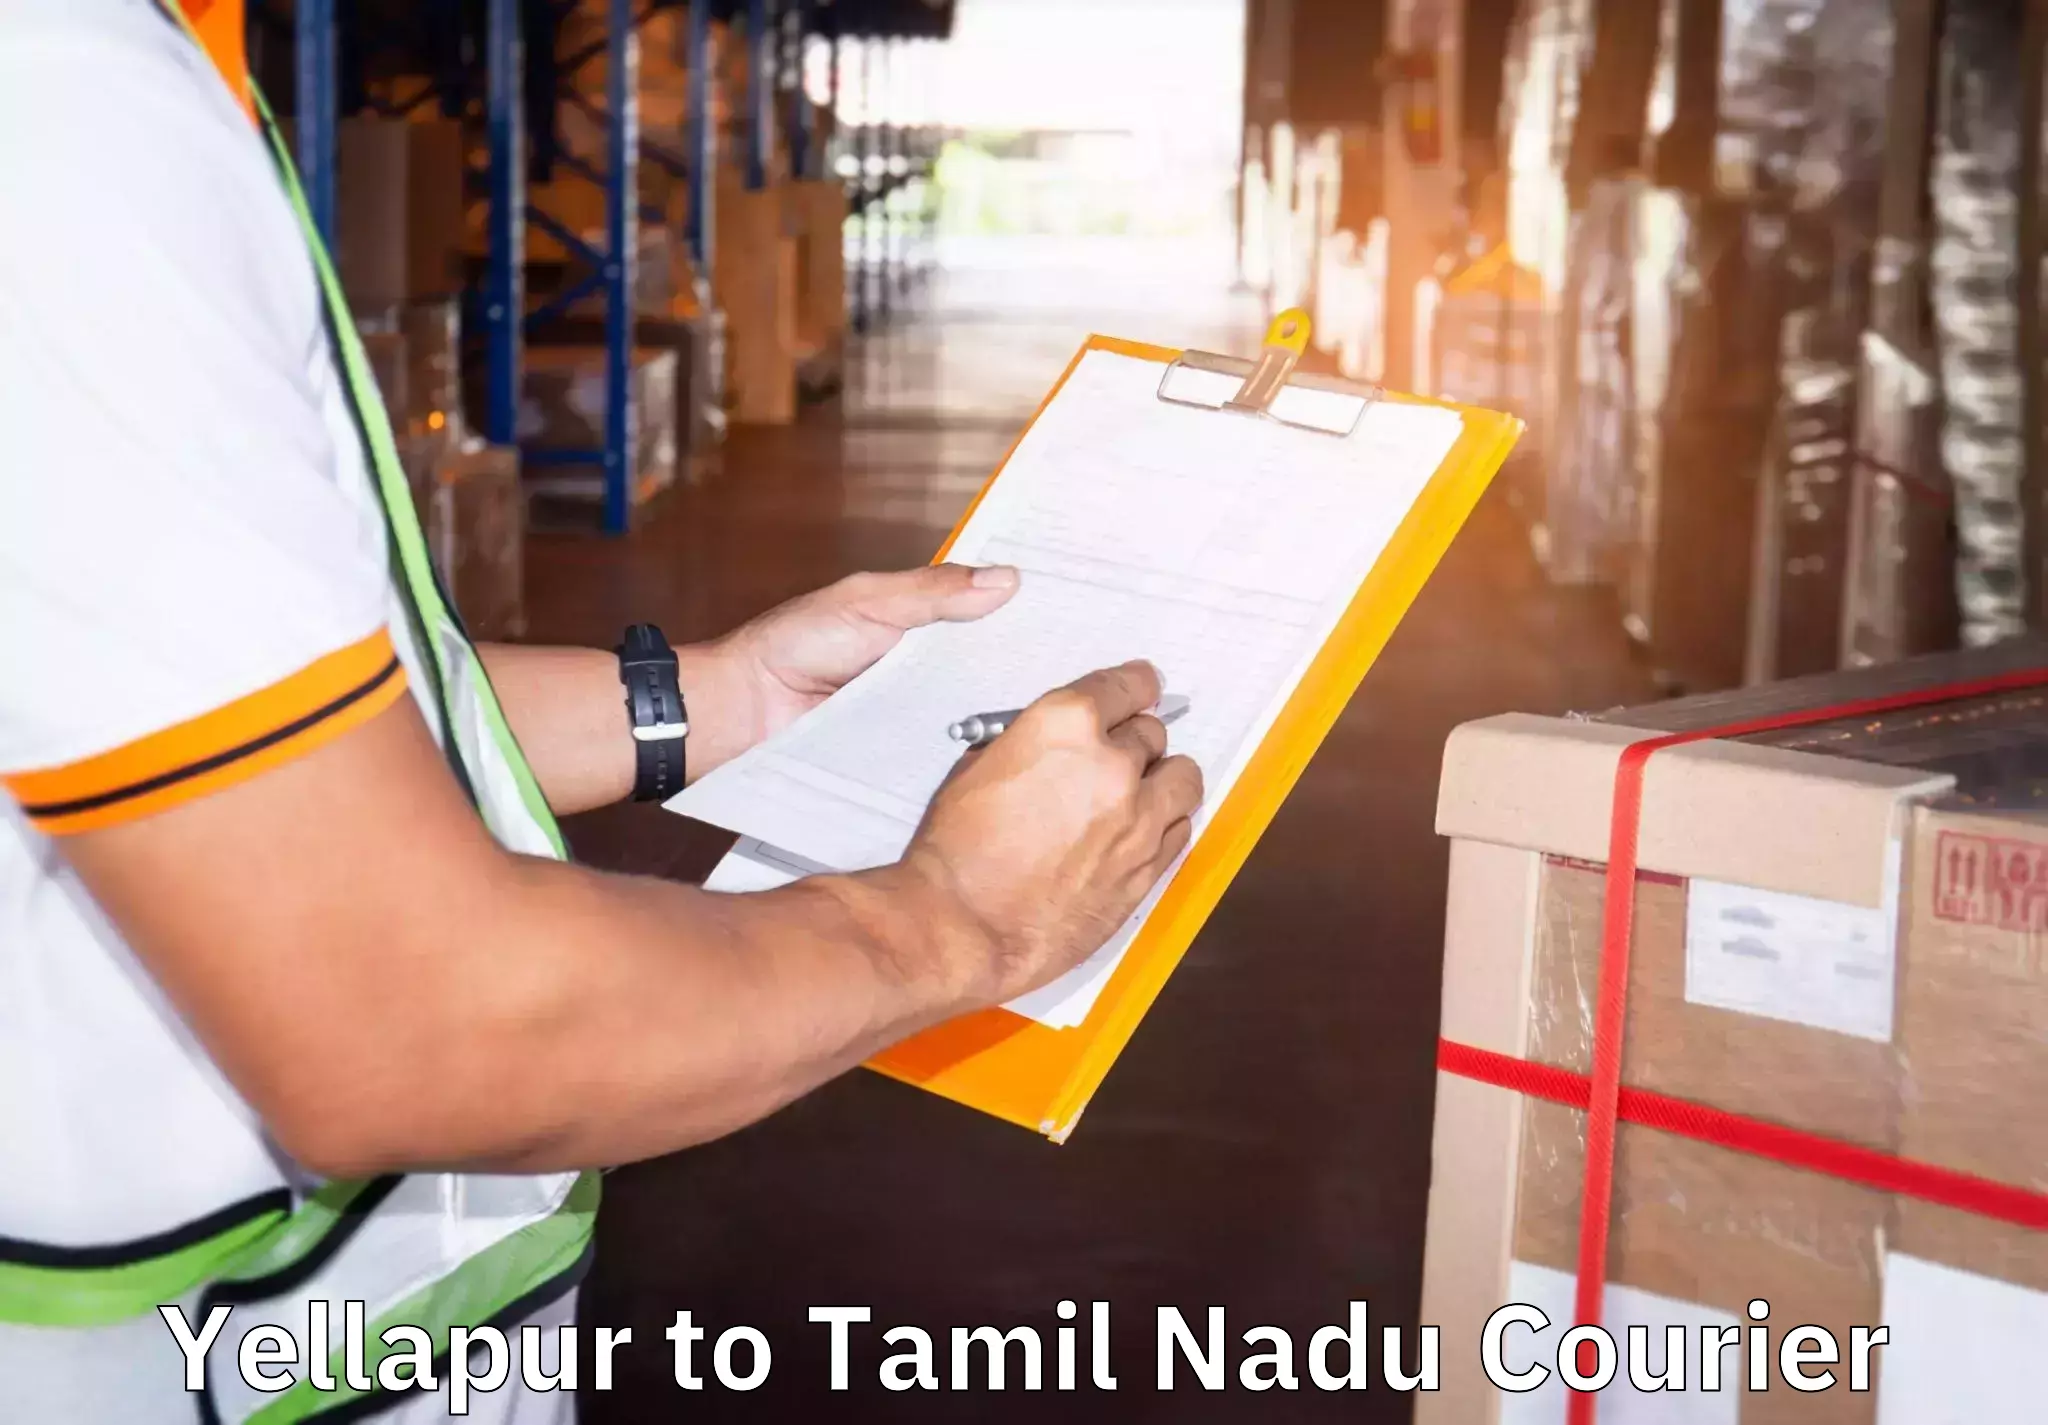 Budget-friendly movers Yellapur to Tamil Nadu